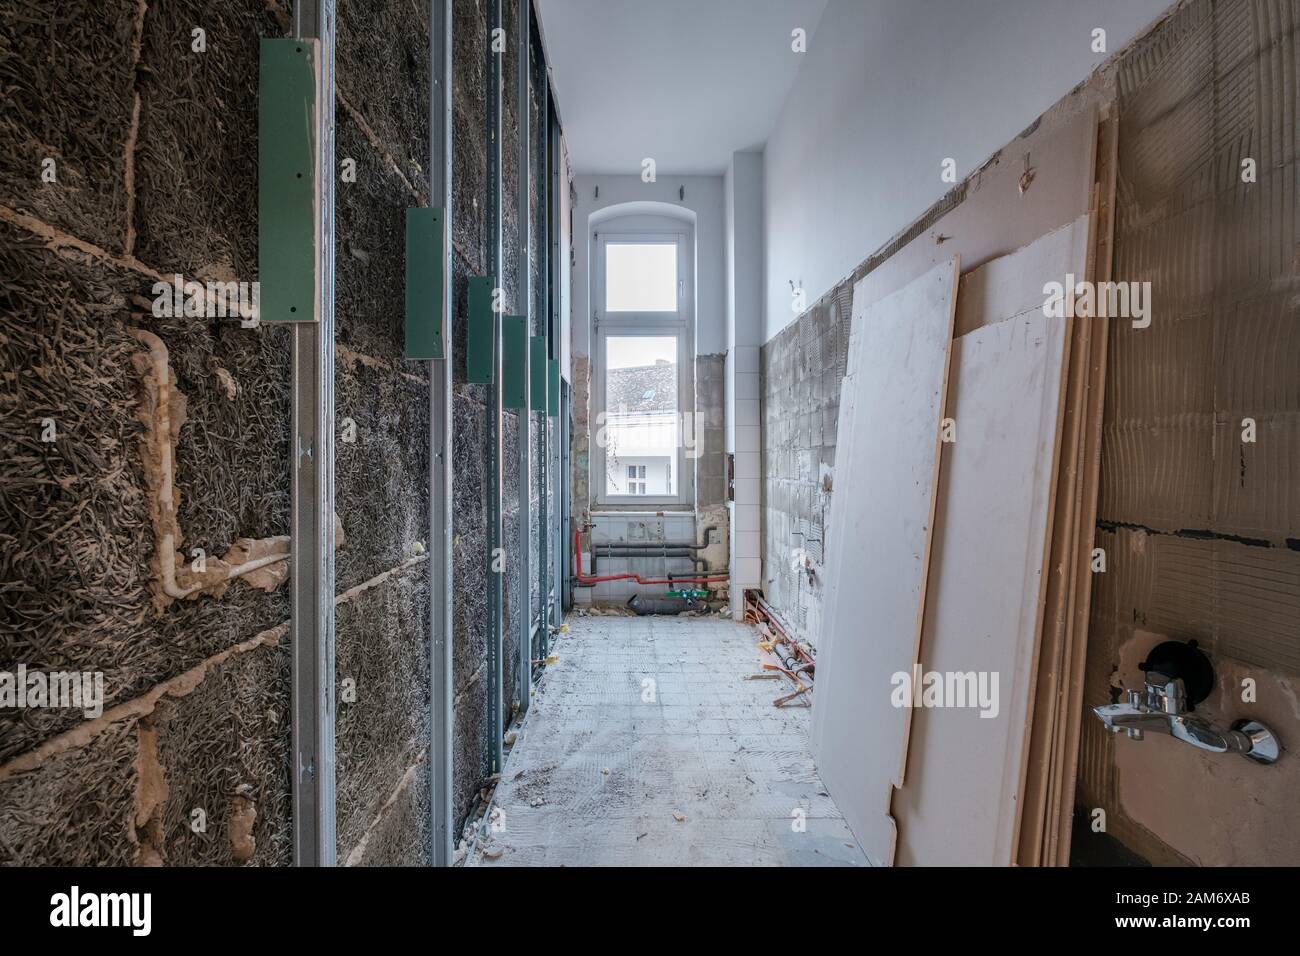 Trockenmauerrahmen im Bad vor der Renovierung - Hausverbesserung - Stockfoto